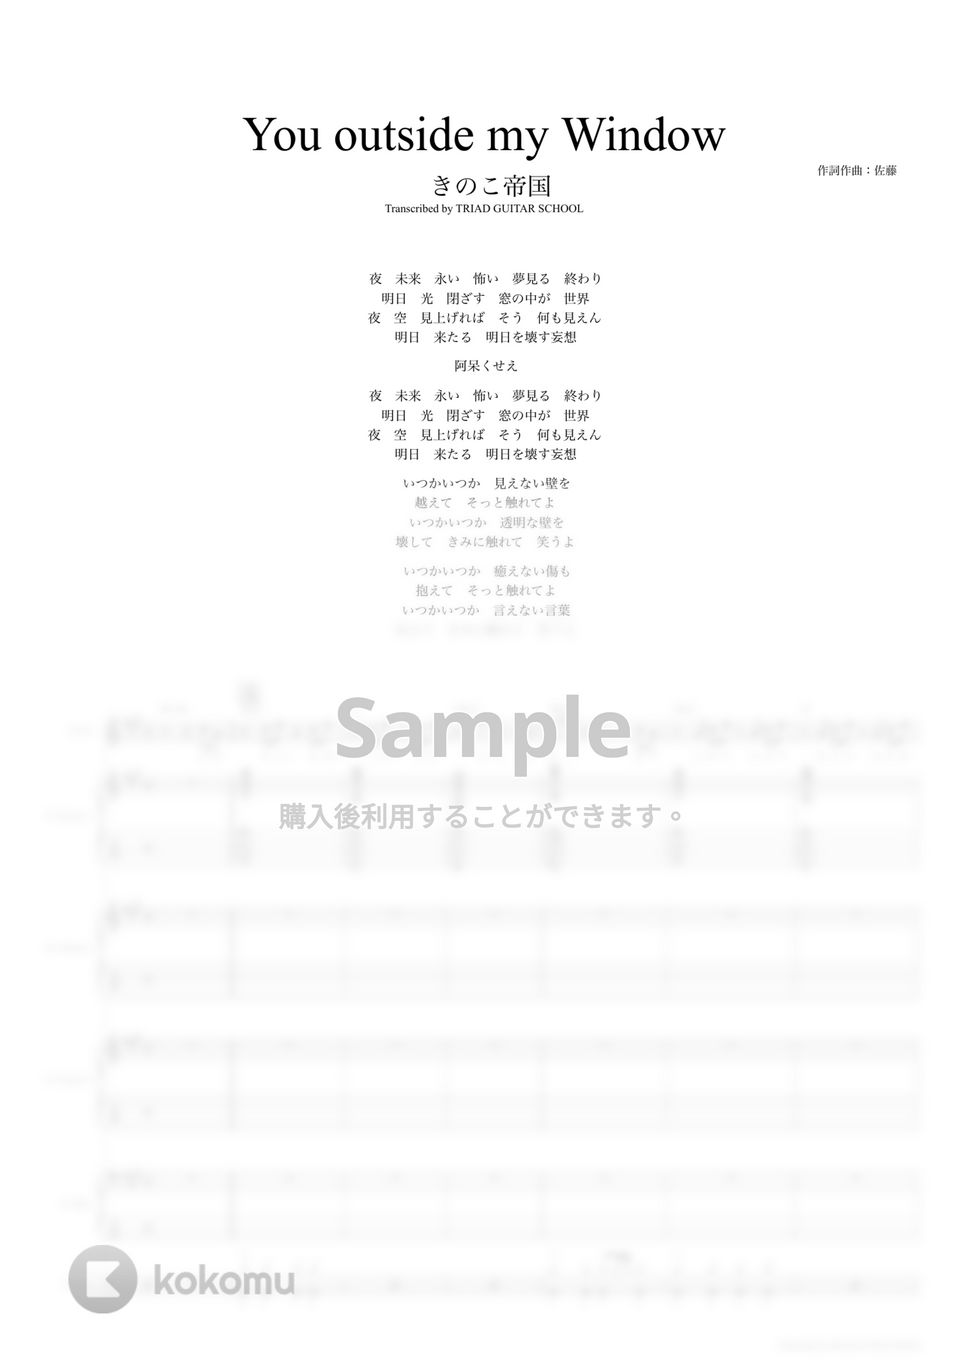 きのこ帝国 - You outside my Window (バンドスコア) by TRIAD GUITAR SCHOOL